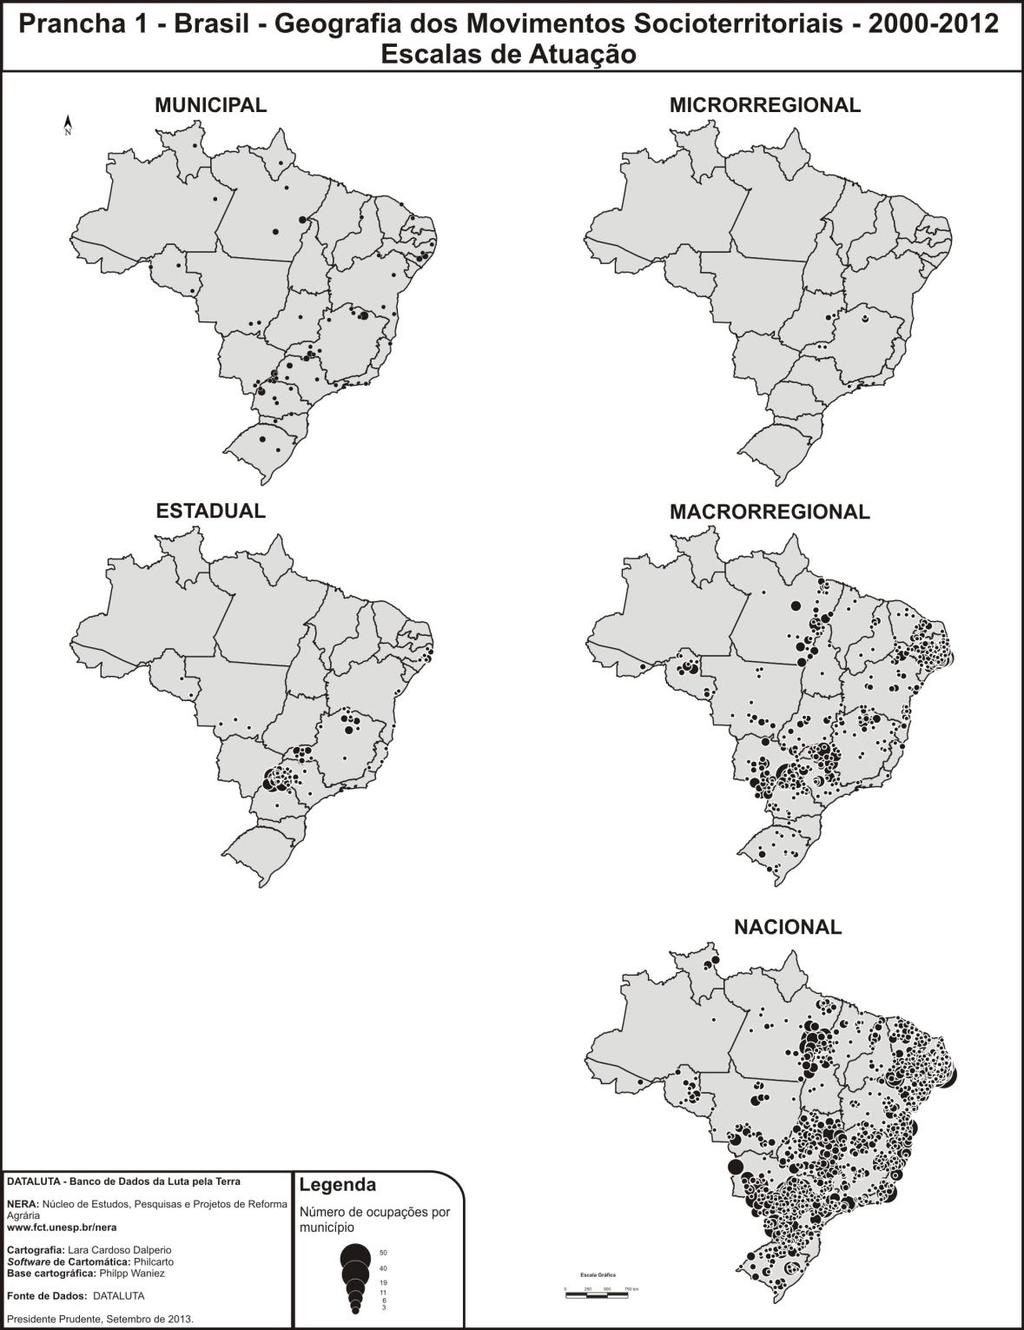 214 A espacialização das ações em ocupação de terras ocorreu em todo o território brasileiro se comparado com as cinco escalas